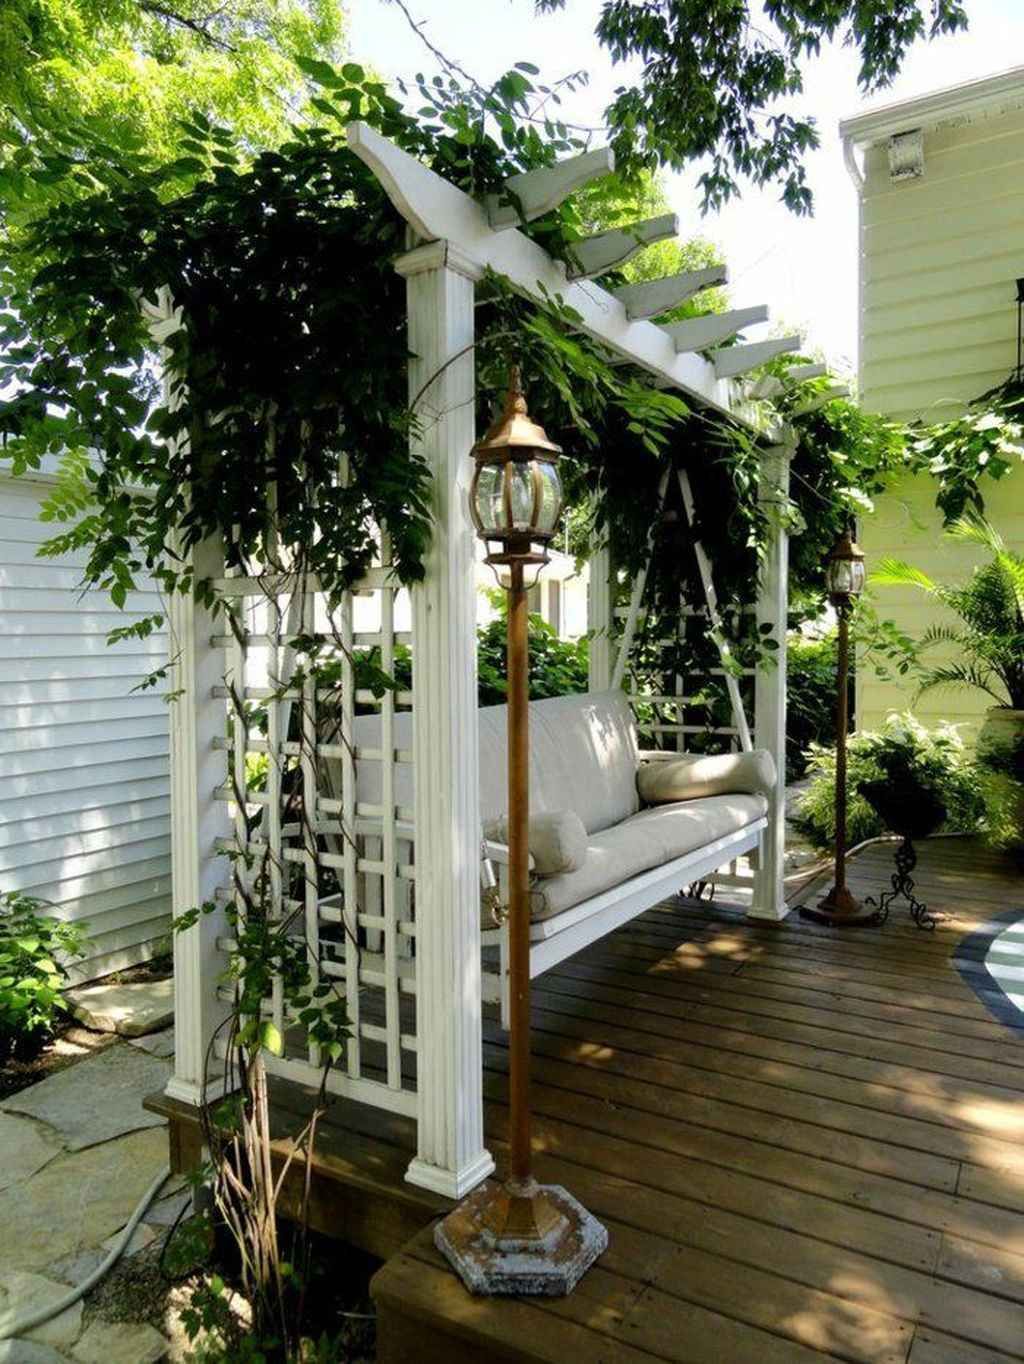 01 Great Garden Swing Seats for Backyard Ideas – frontbackhome